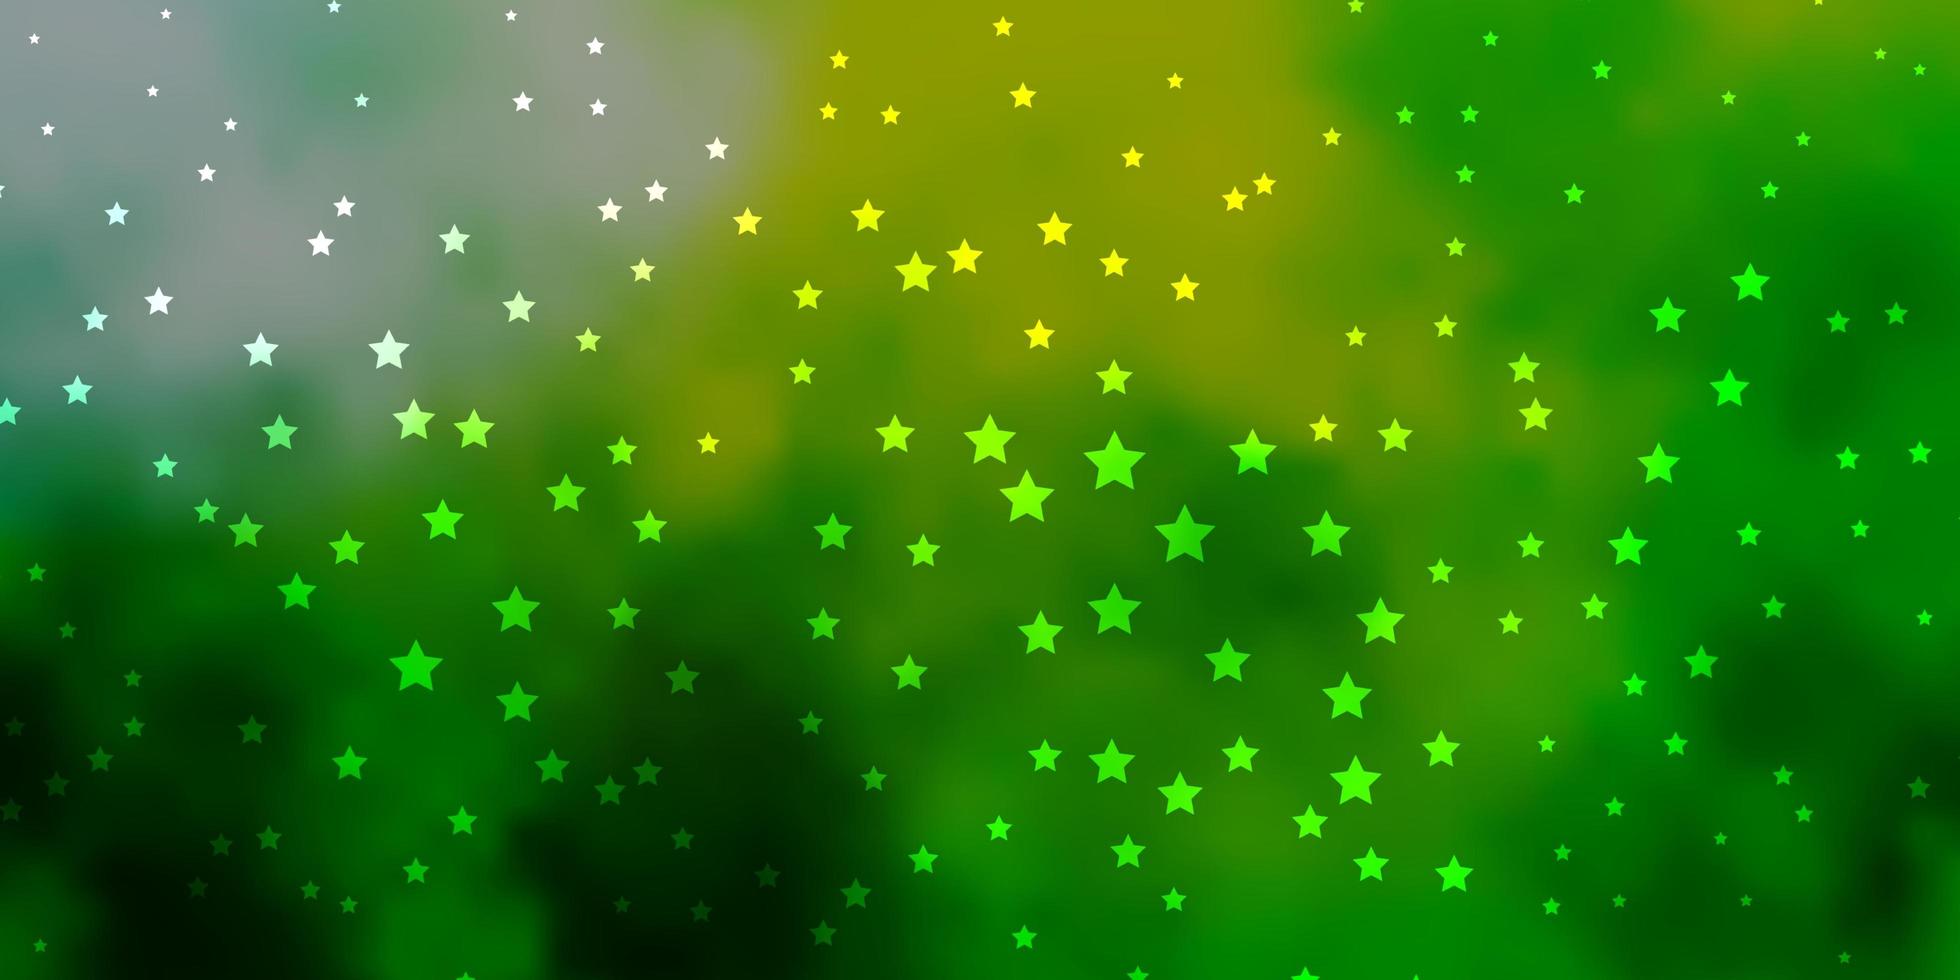 patrón de vector verde oscuro, amarillo con estrellas abstractas.